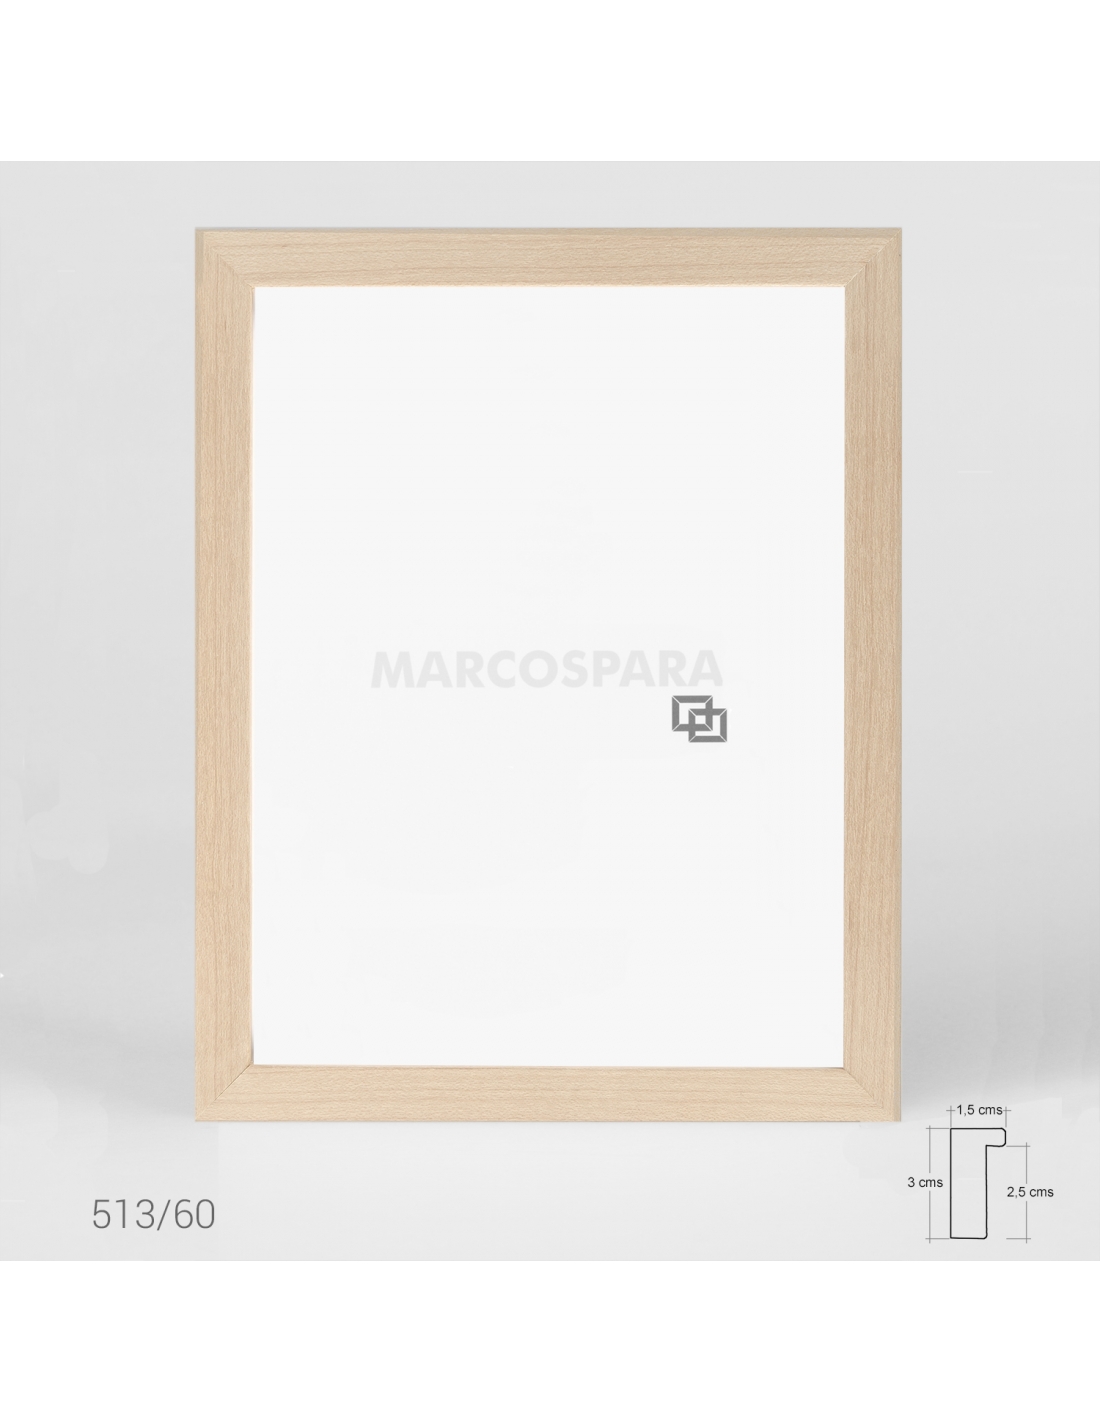 Mira Marco de madera Top Pro S 14,8x21 cm (A5) - plata - Cristal estándar